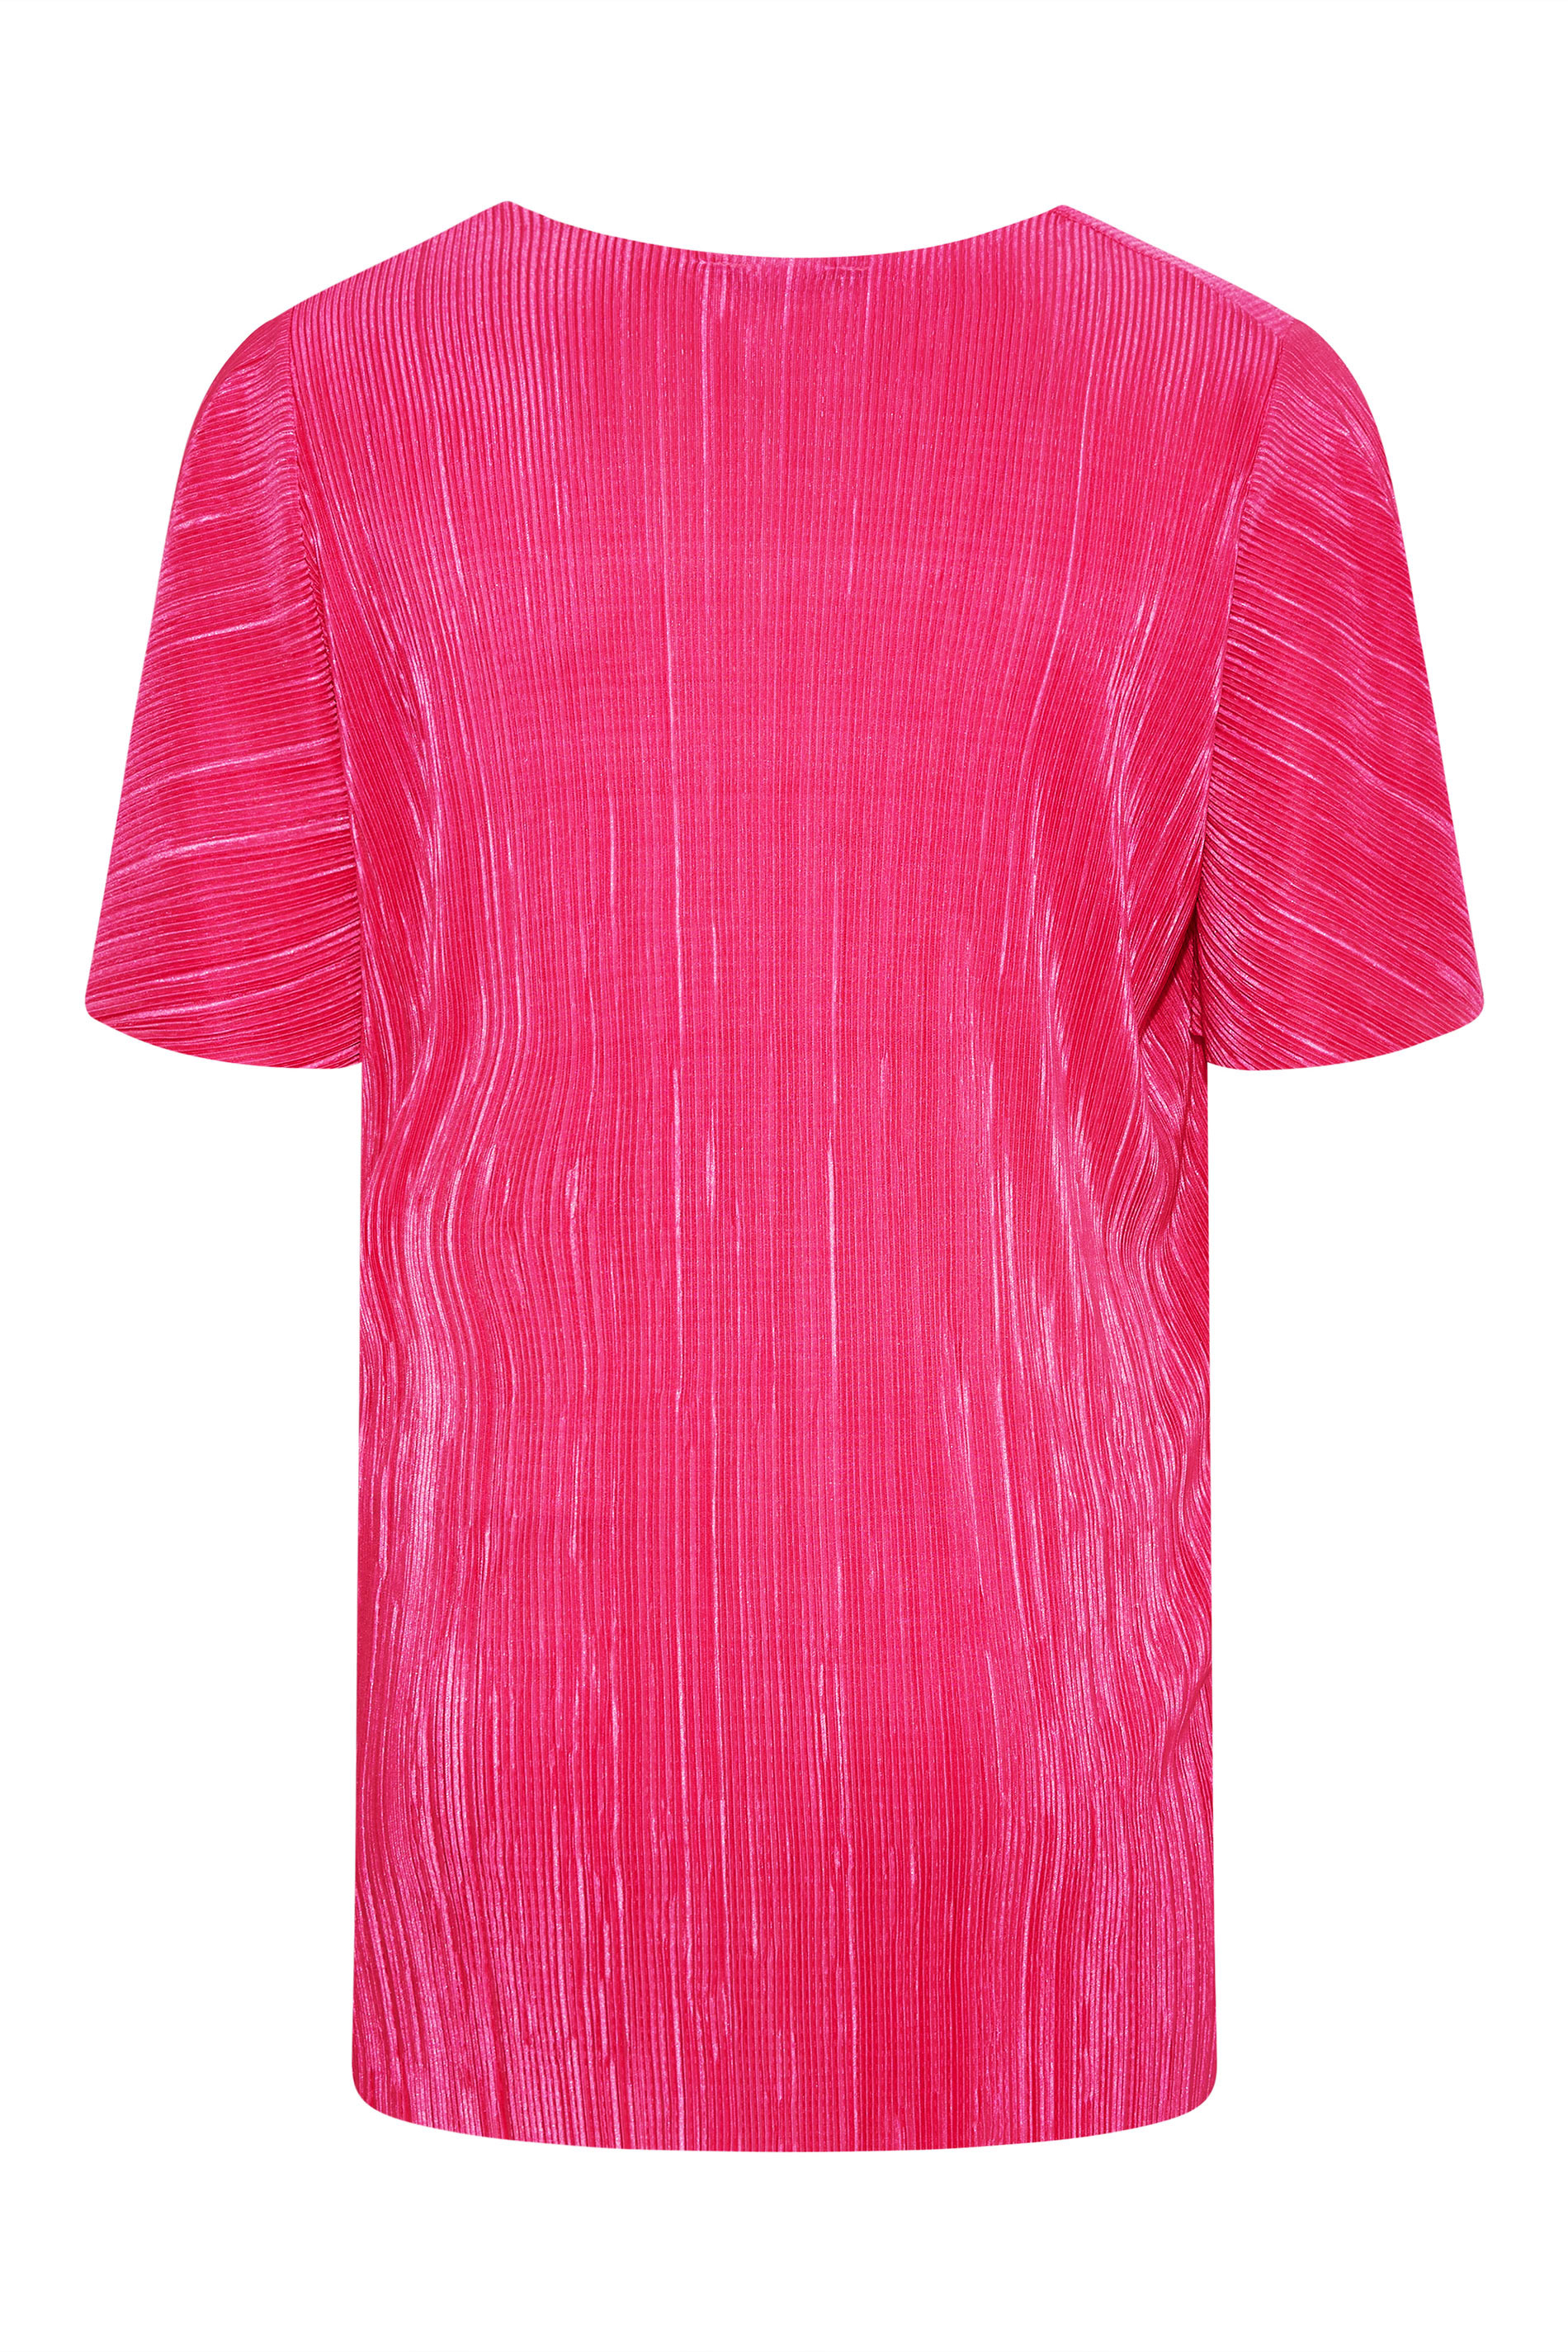 Grande taille  Tops Grande taille  Tops de Soirée | LIMITED COLLECTION - T-Shirt Rose Ample Texture Plissée - OB71025